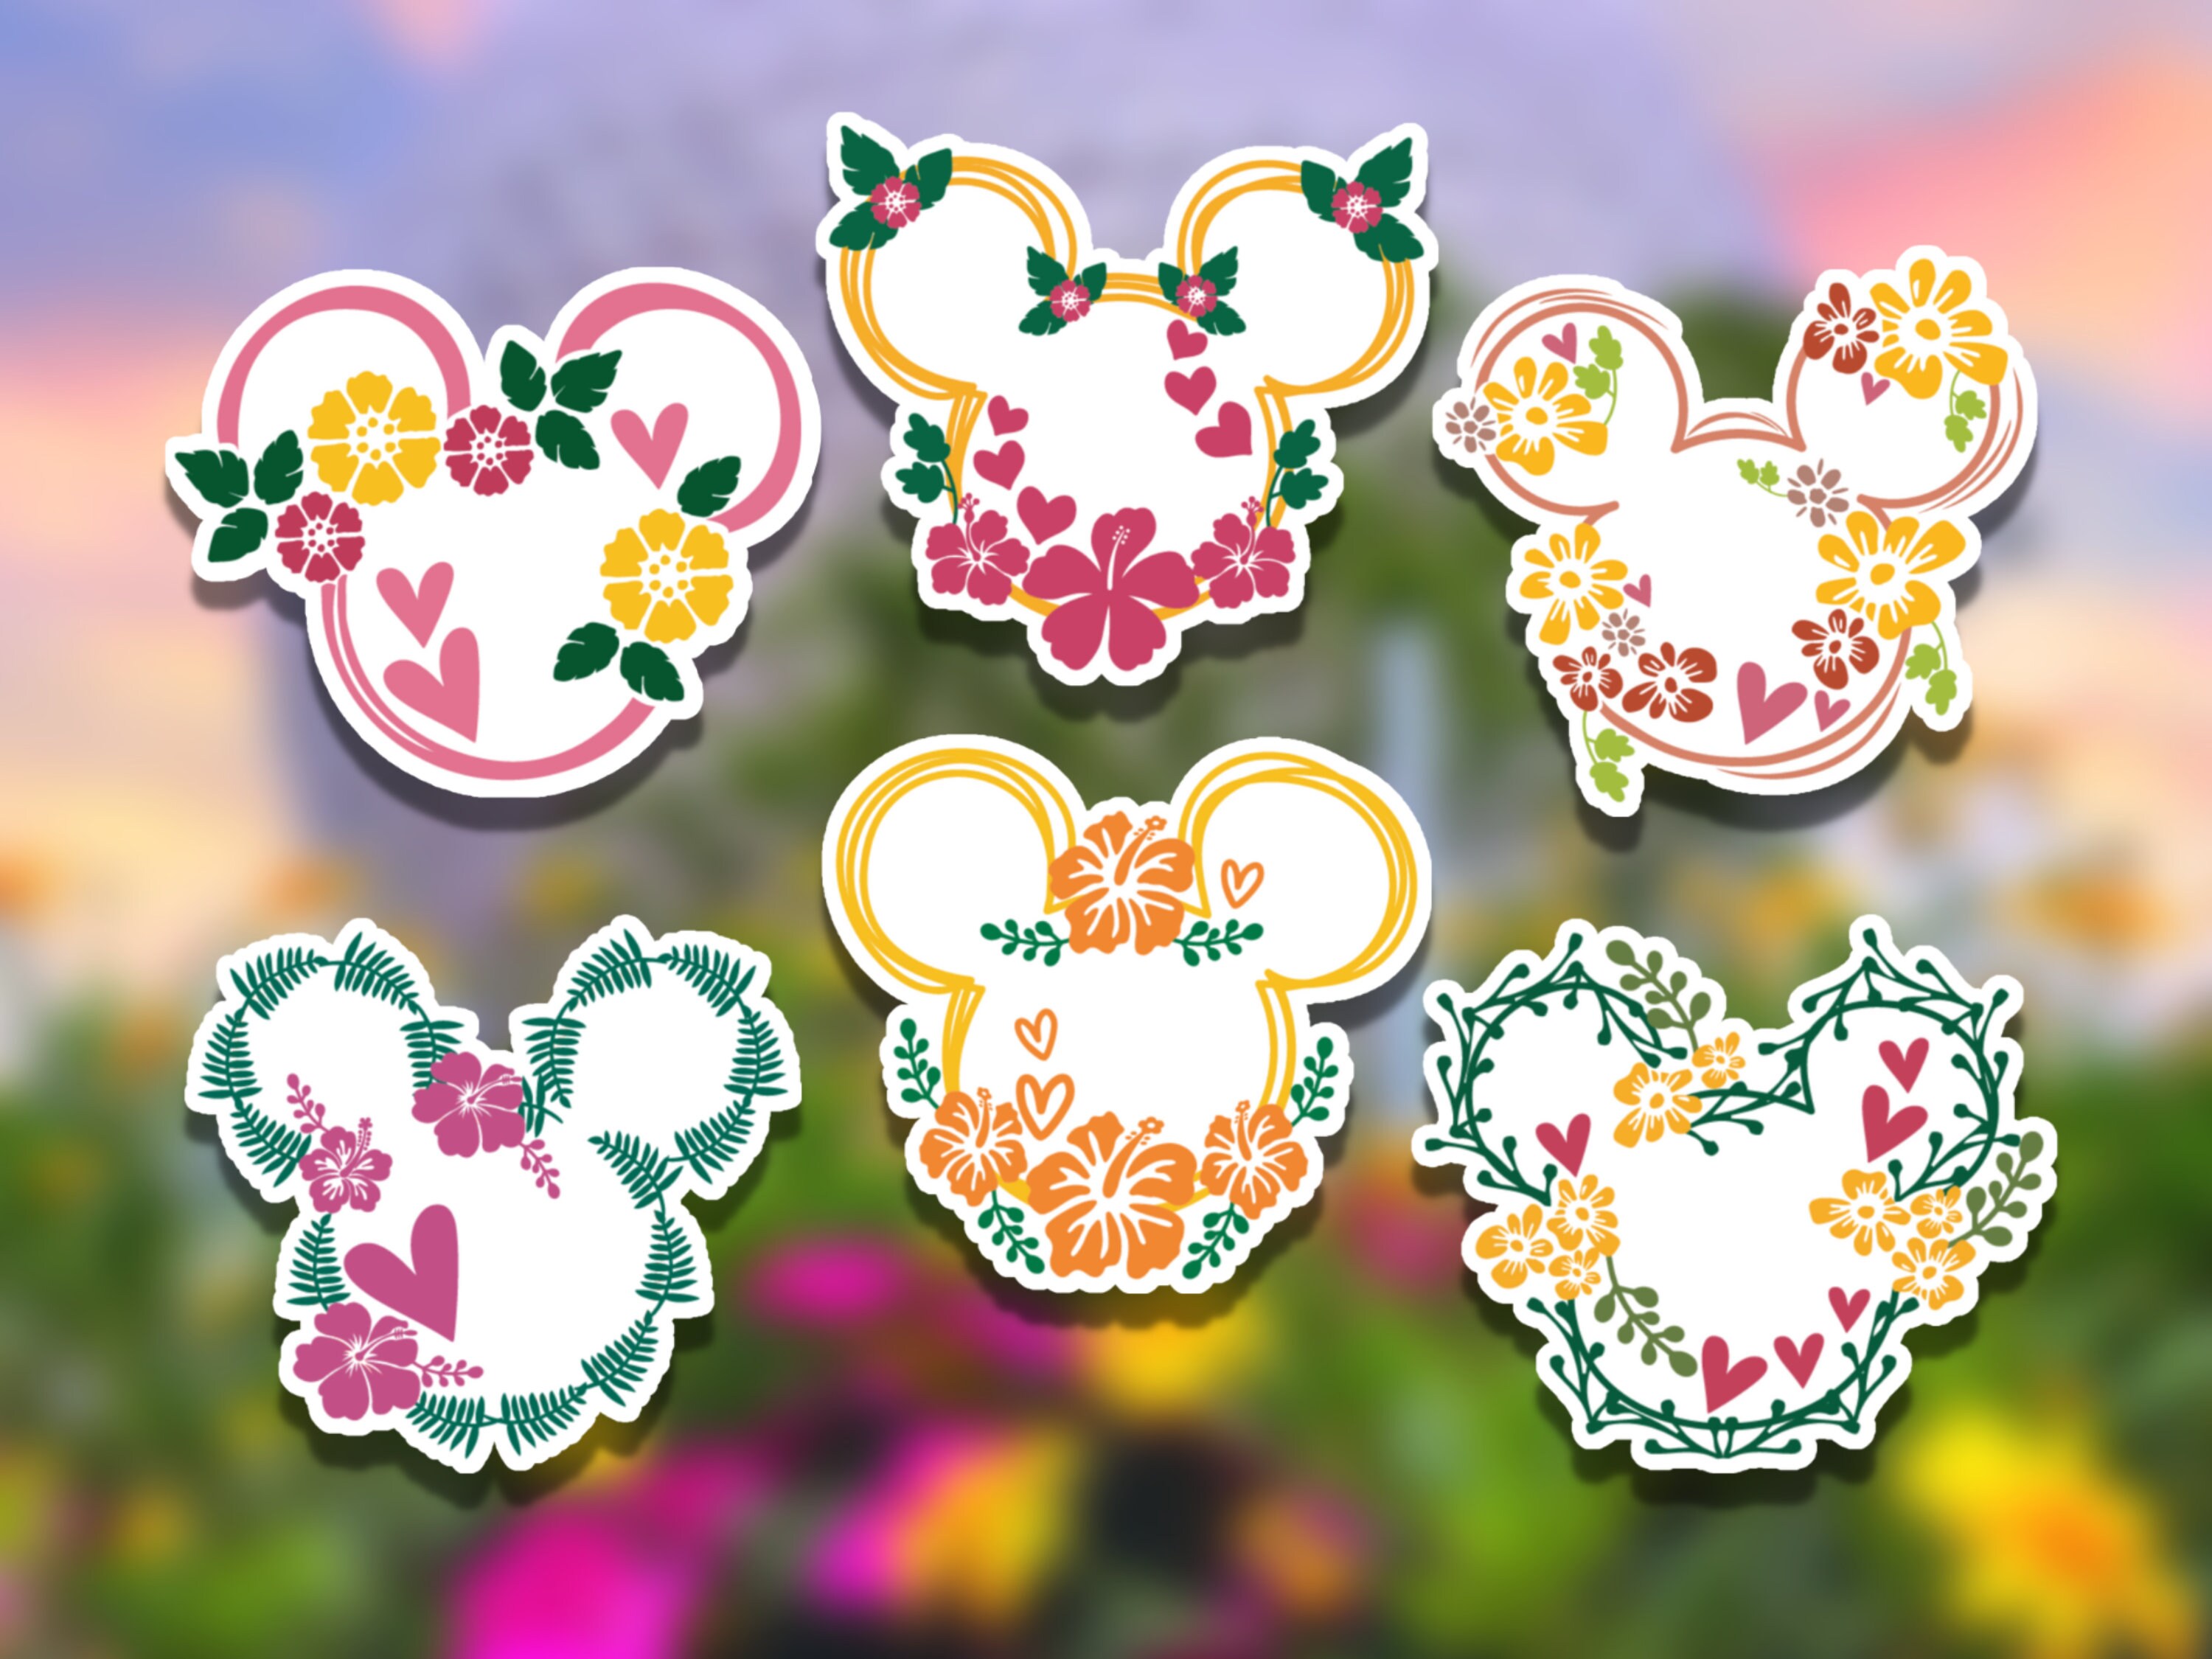 4 Hidden Mickey Flower Pins-Bouquet Pins-Disney themed